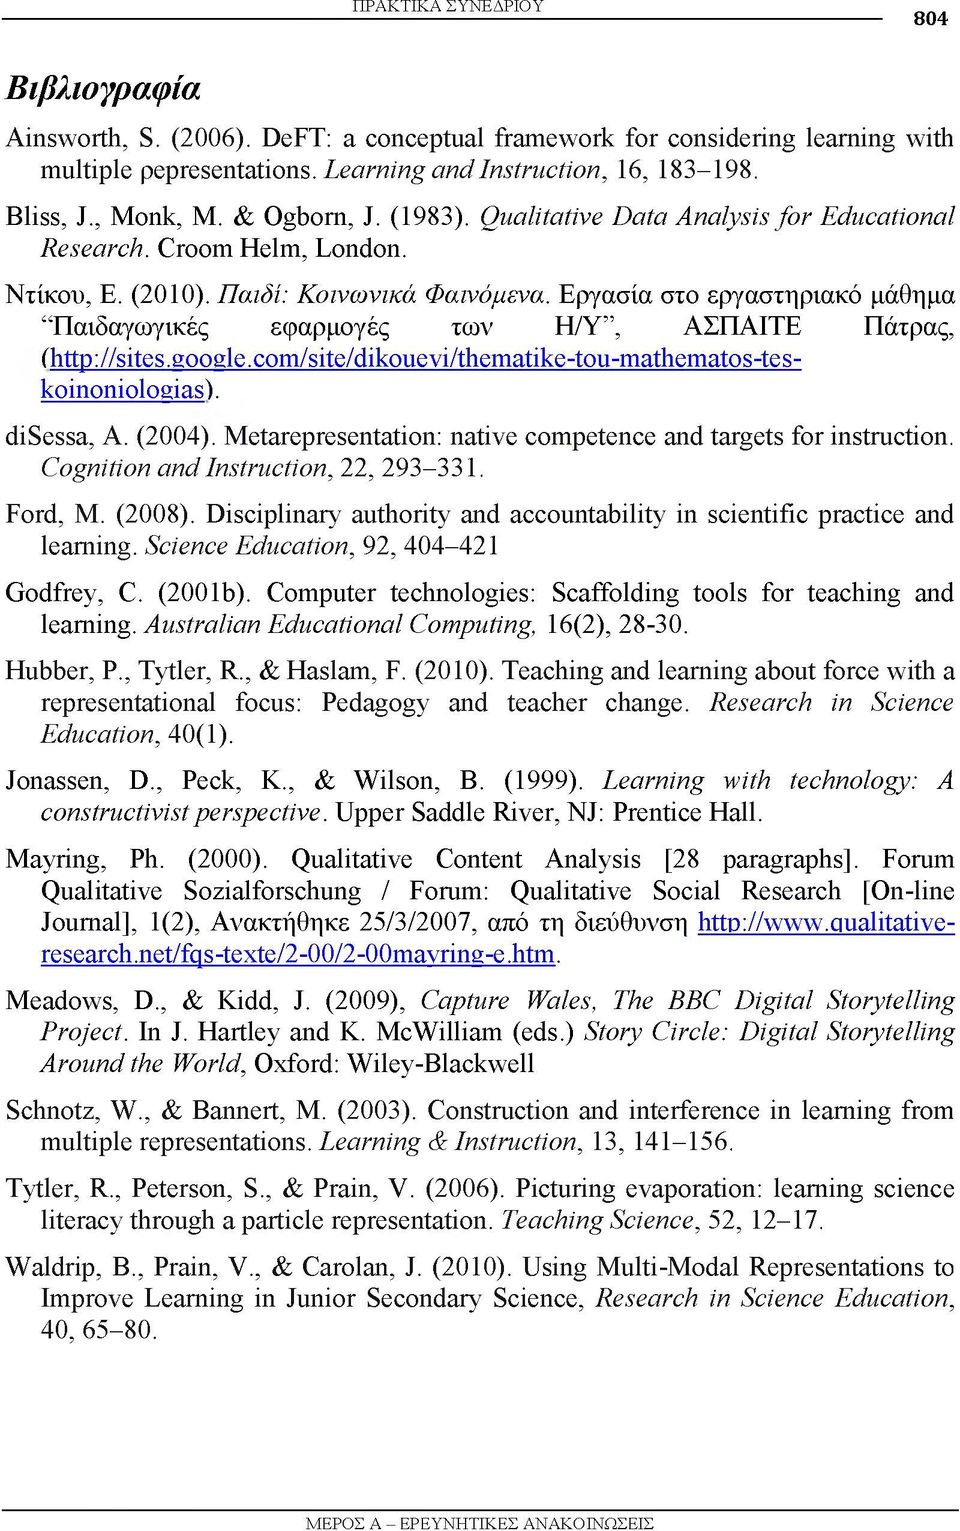 Εργασία στο εργαστηριακό μάθημα Παιδαγωγικές εφαρμογές των Η/Υ, ΑΣΠΑΙΤΕ Πάτρας, (http://sites.google.com/site/dikouevi/thematike-tou-mathematos-teskoinoniologias). disessa, A. (2004).